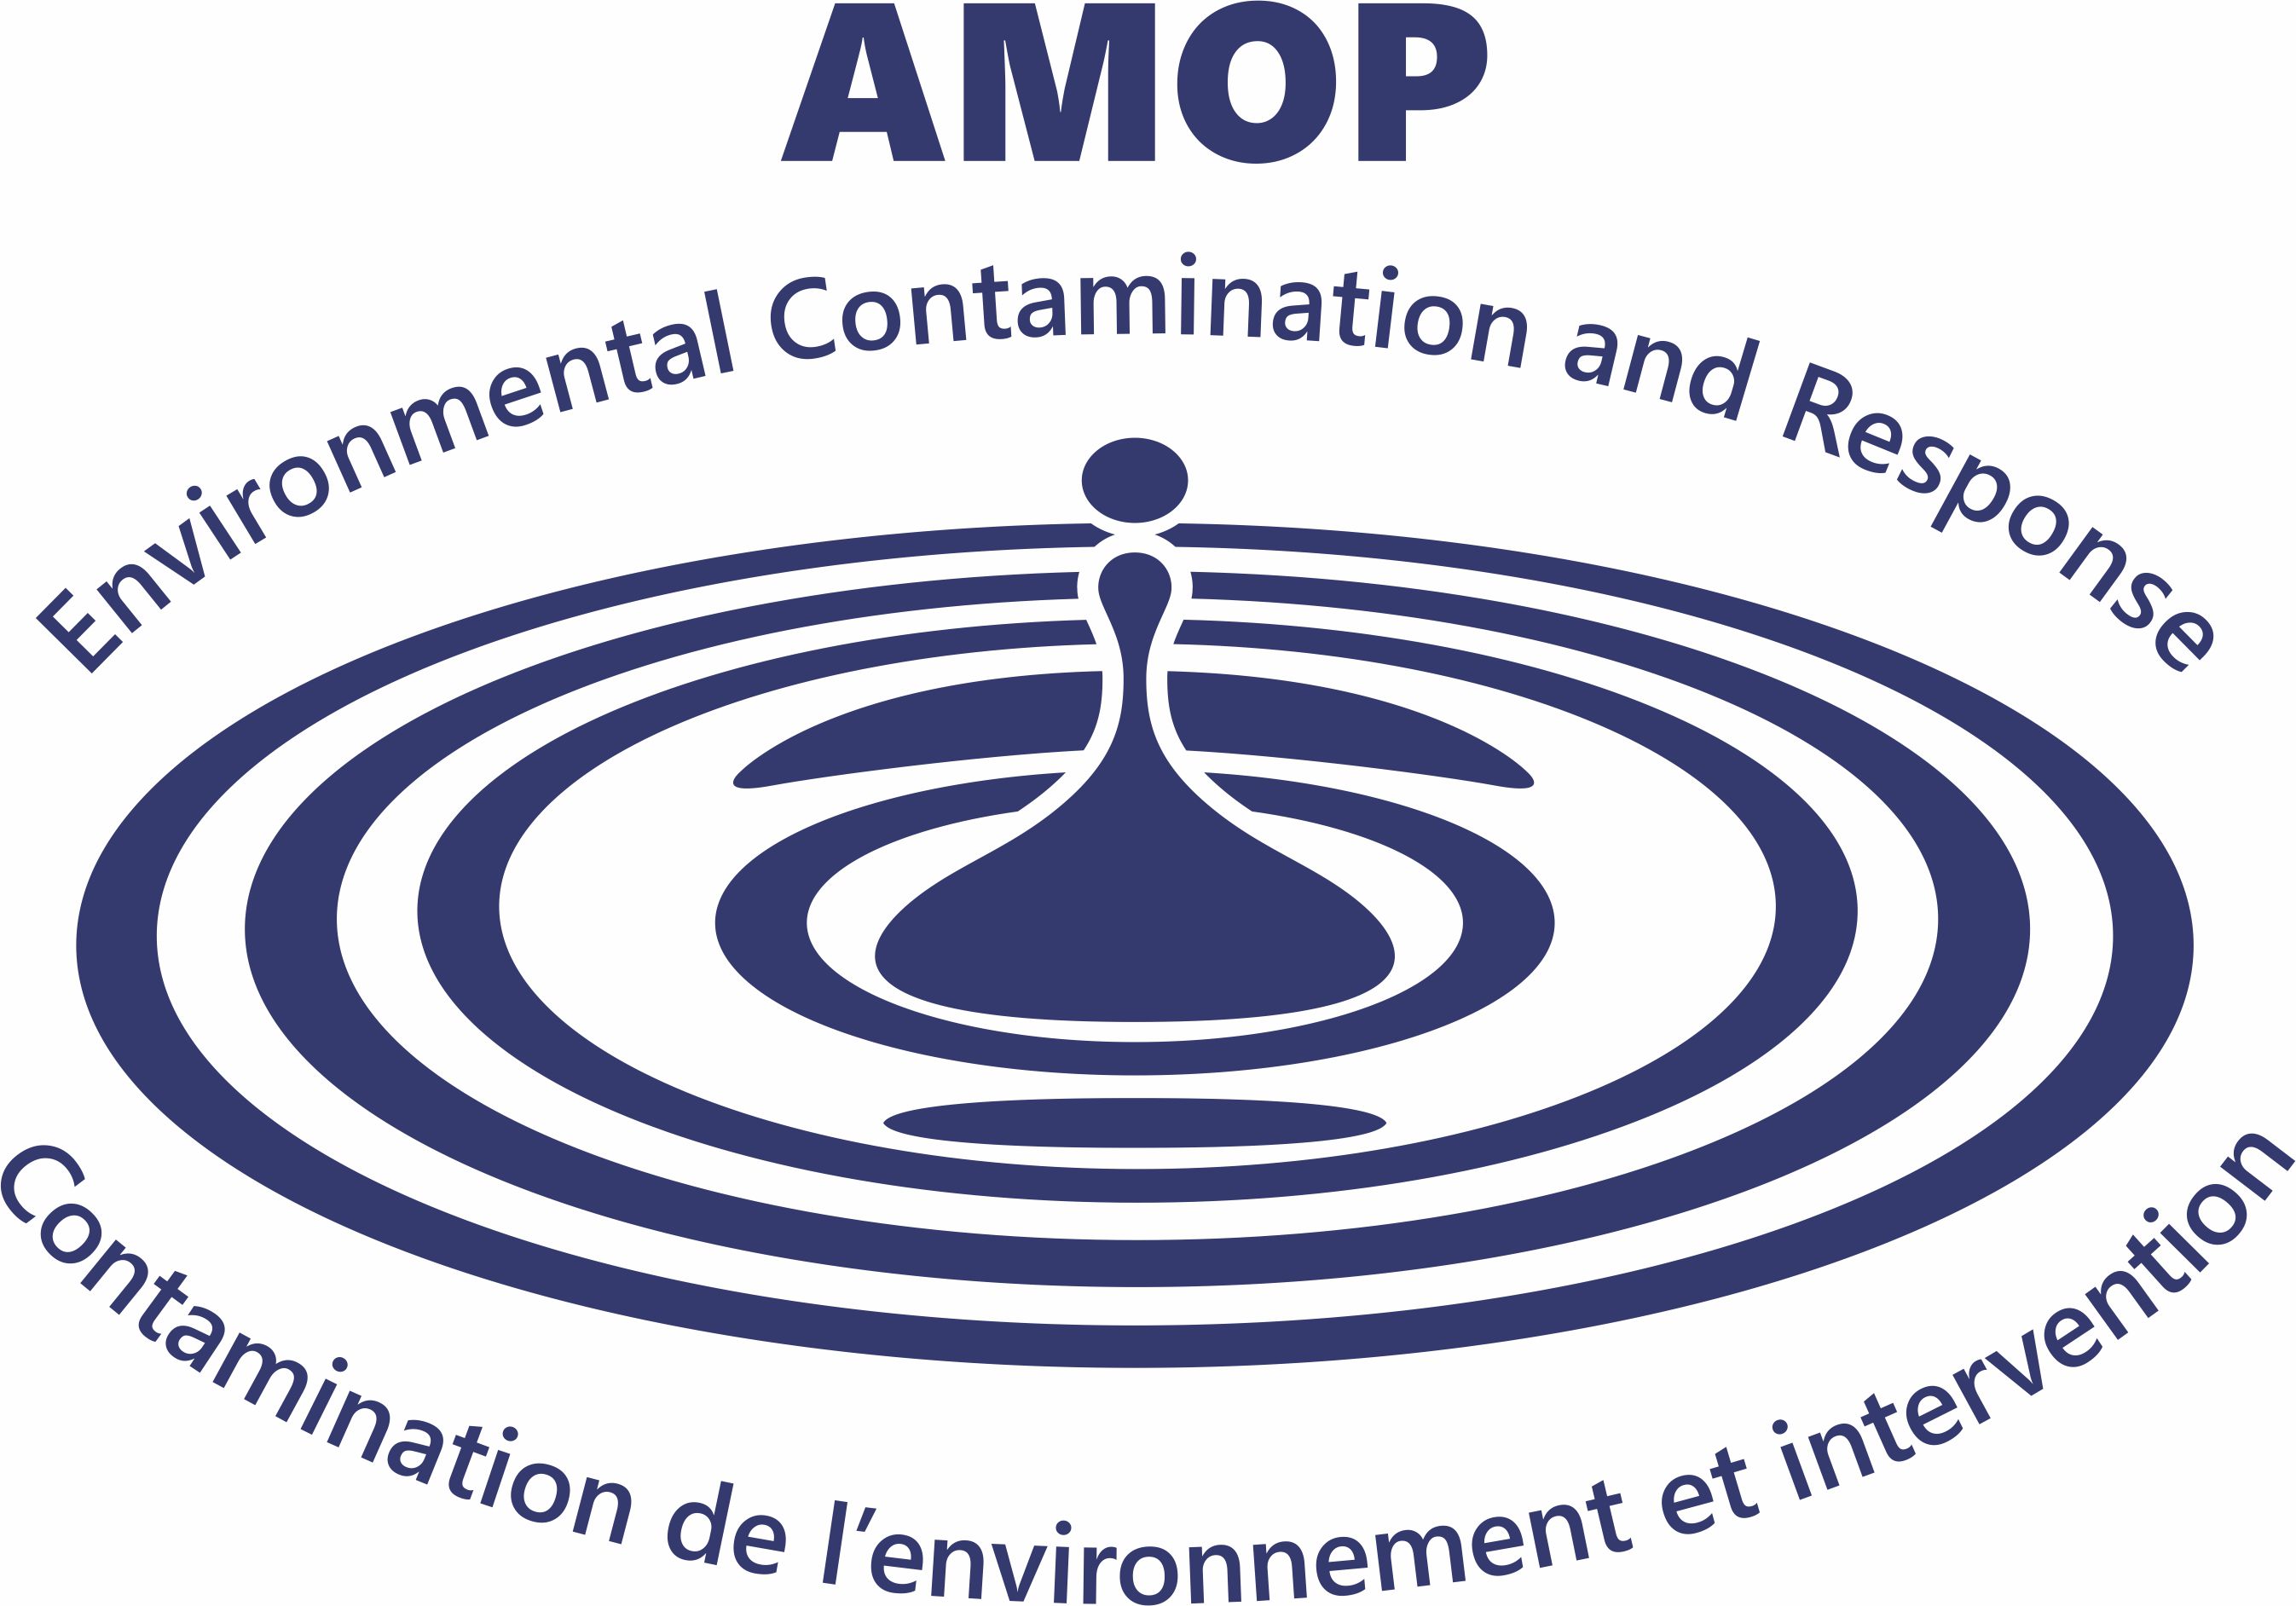 43<sup>rd</sup> AMOP Technical Seminar on Environmental Contamination and Response